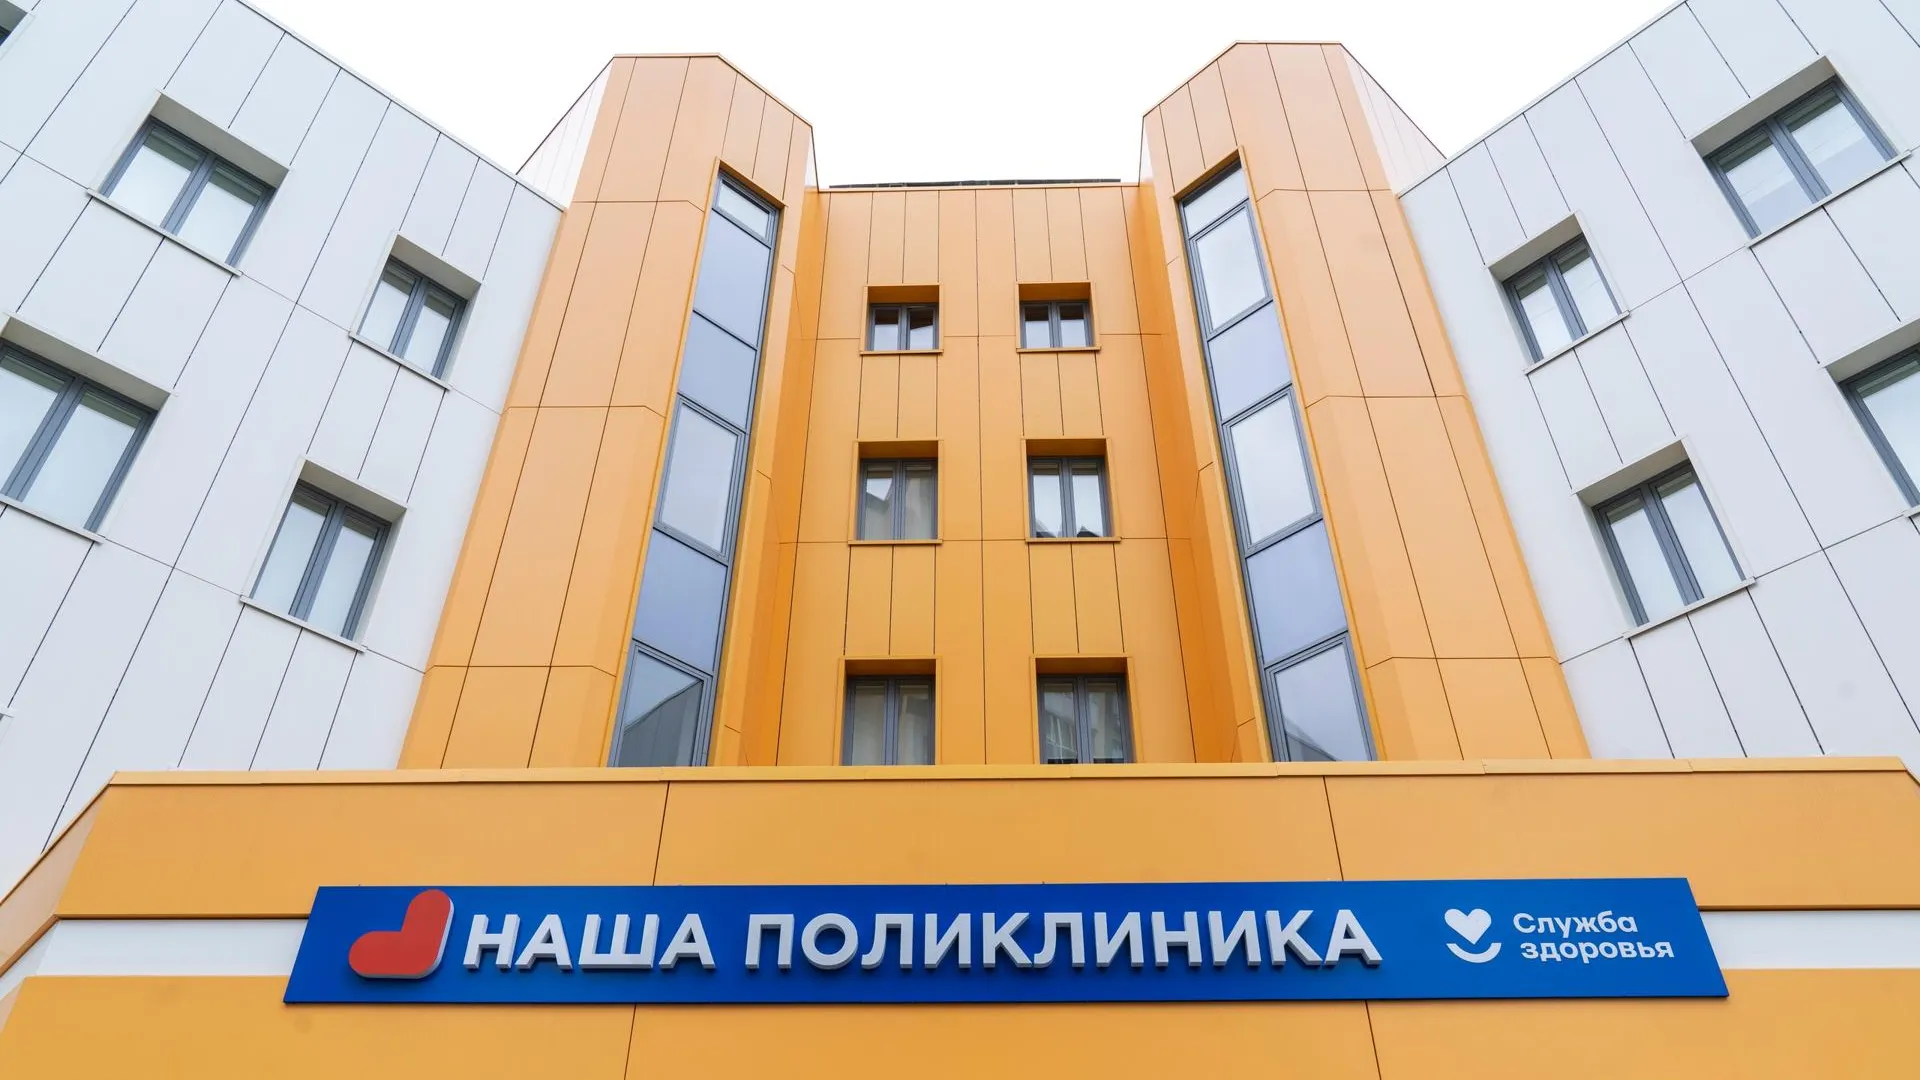 Долгожданная поликлиника открылась в Домодедове по народной программе «Единой России»